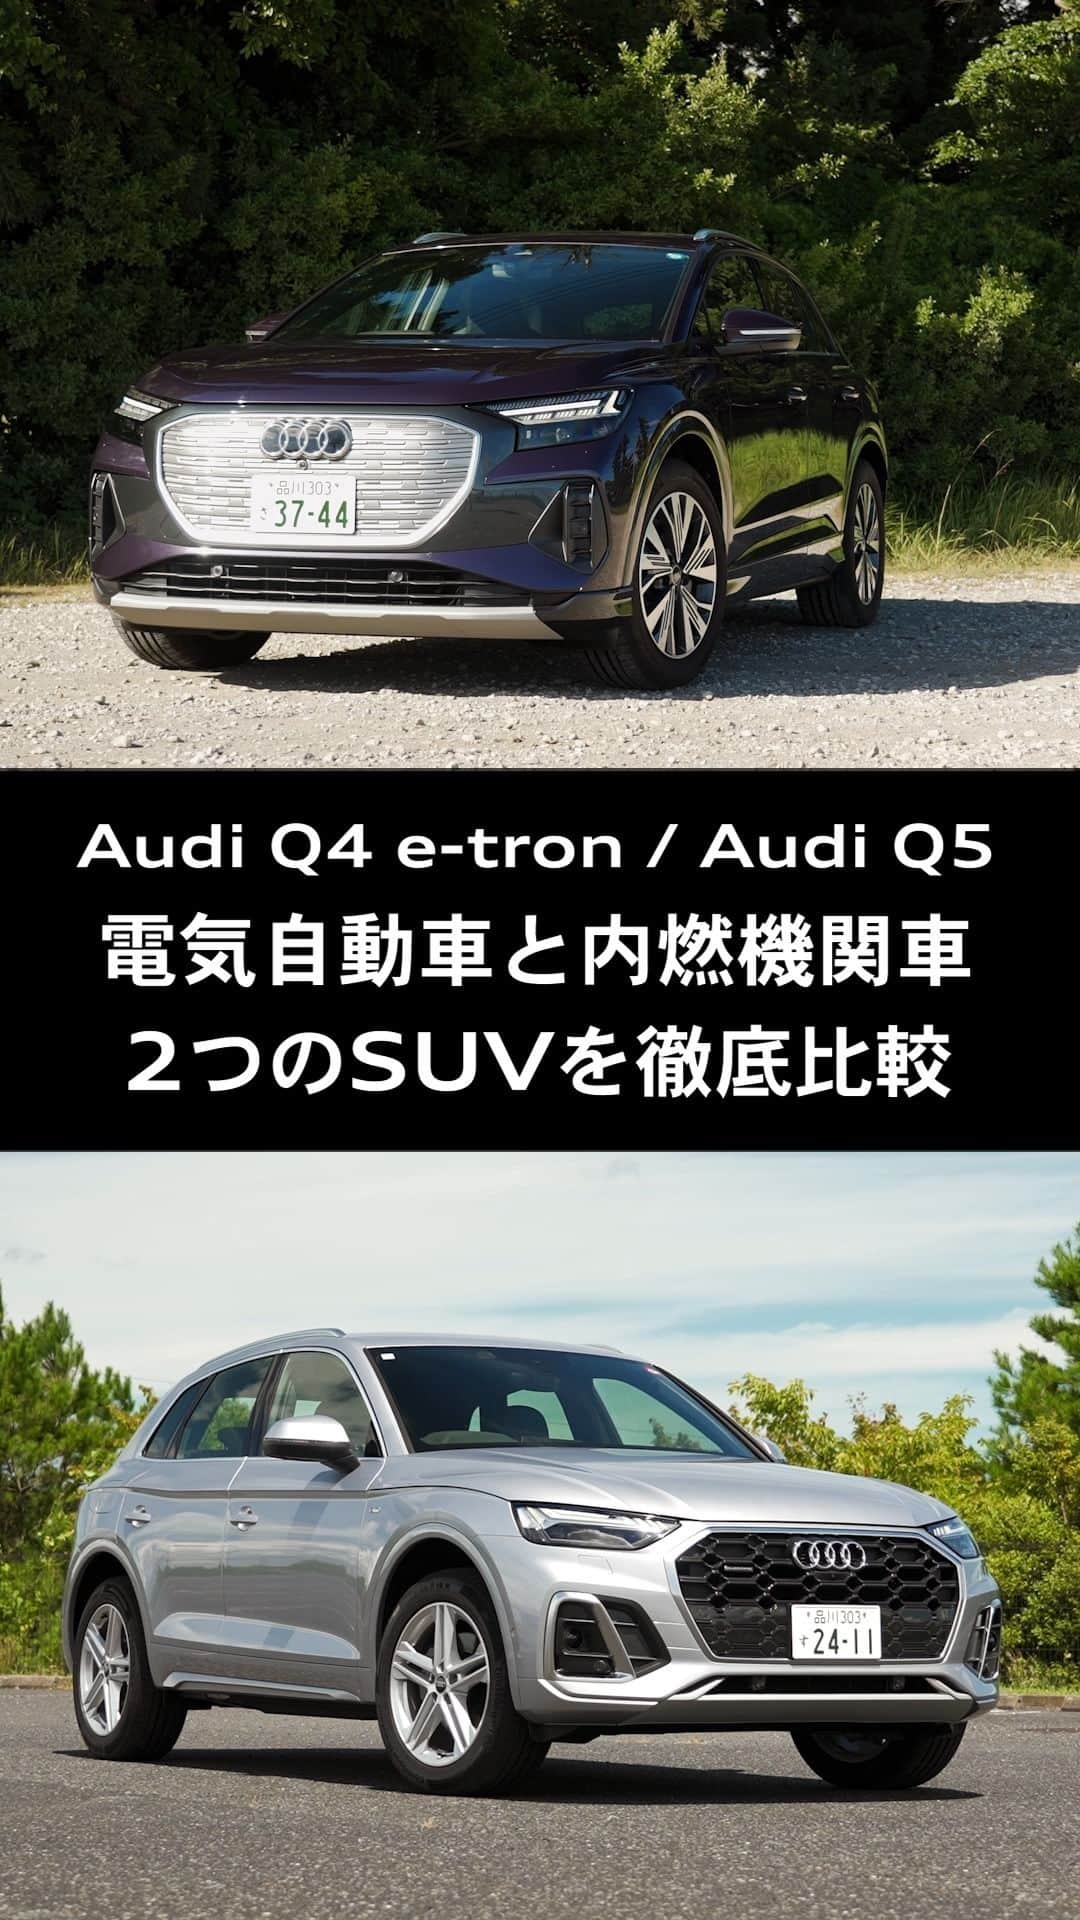 Audi Japan Sales / アウディジャパン販売のインスタグラム：「【Audi Q4 e-tron ＆ Audi Q5を徹底比較】  Audiが誇る2つの電動コンパクトSUV、Audi Q4 e-tronとAudi Q5をデザイン、サイズ、走行性能など様々な側面から徹底比較しました。  電気自動車と内燃機関車、それぞれの魅力をご紹介します。  Audi Q4 e-tron ＆ Audi Q5 徹底比較の詳細は、「Audi Sales Japan（AJS）公式Youtubeチャンネル」にて公開しています。  ぜひご覧ください。 https://youtu.be/GR9MdcNKQkc  @audi.japan.sales  #Audi #AudiQ4 #AudiQ5 #AJS #myaudi #audistyle #car #アウディ #ドライブ #車 #愛車 #外車 #ドイツ車 #車好き #車好きな人と繋がりたい #アウディ女子 #車好き男子 #試乗 #徹底比較 #電動SUV」